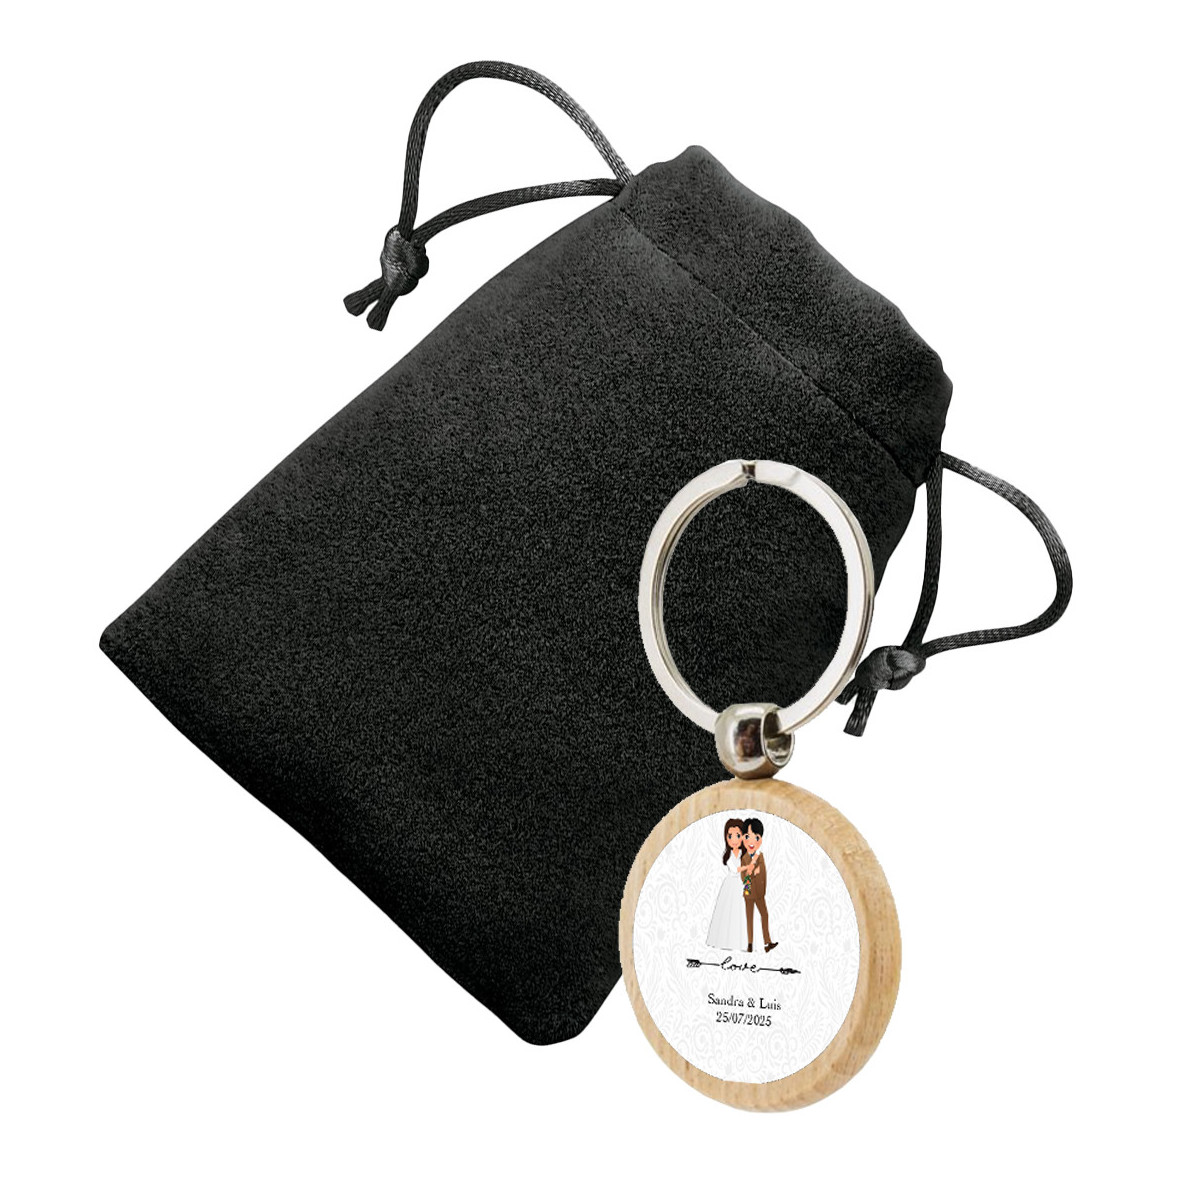 Portachiavi circolare in legno personalizzato con adesivo e presentato in borsa in pelle scamosciata